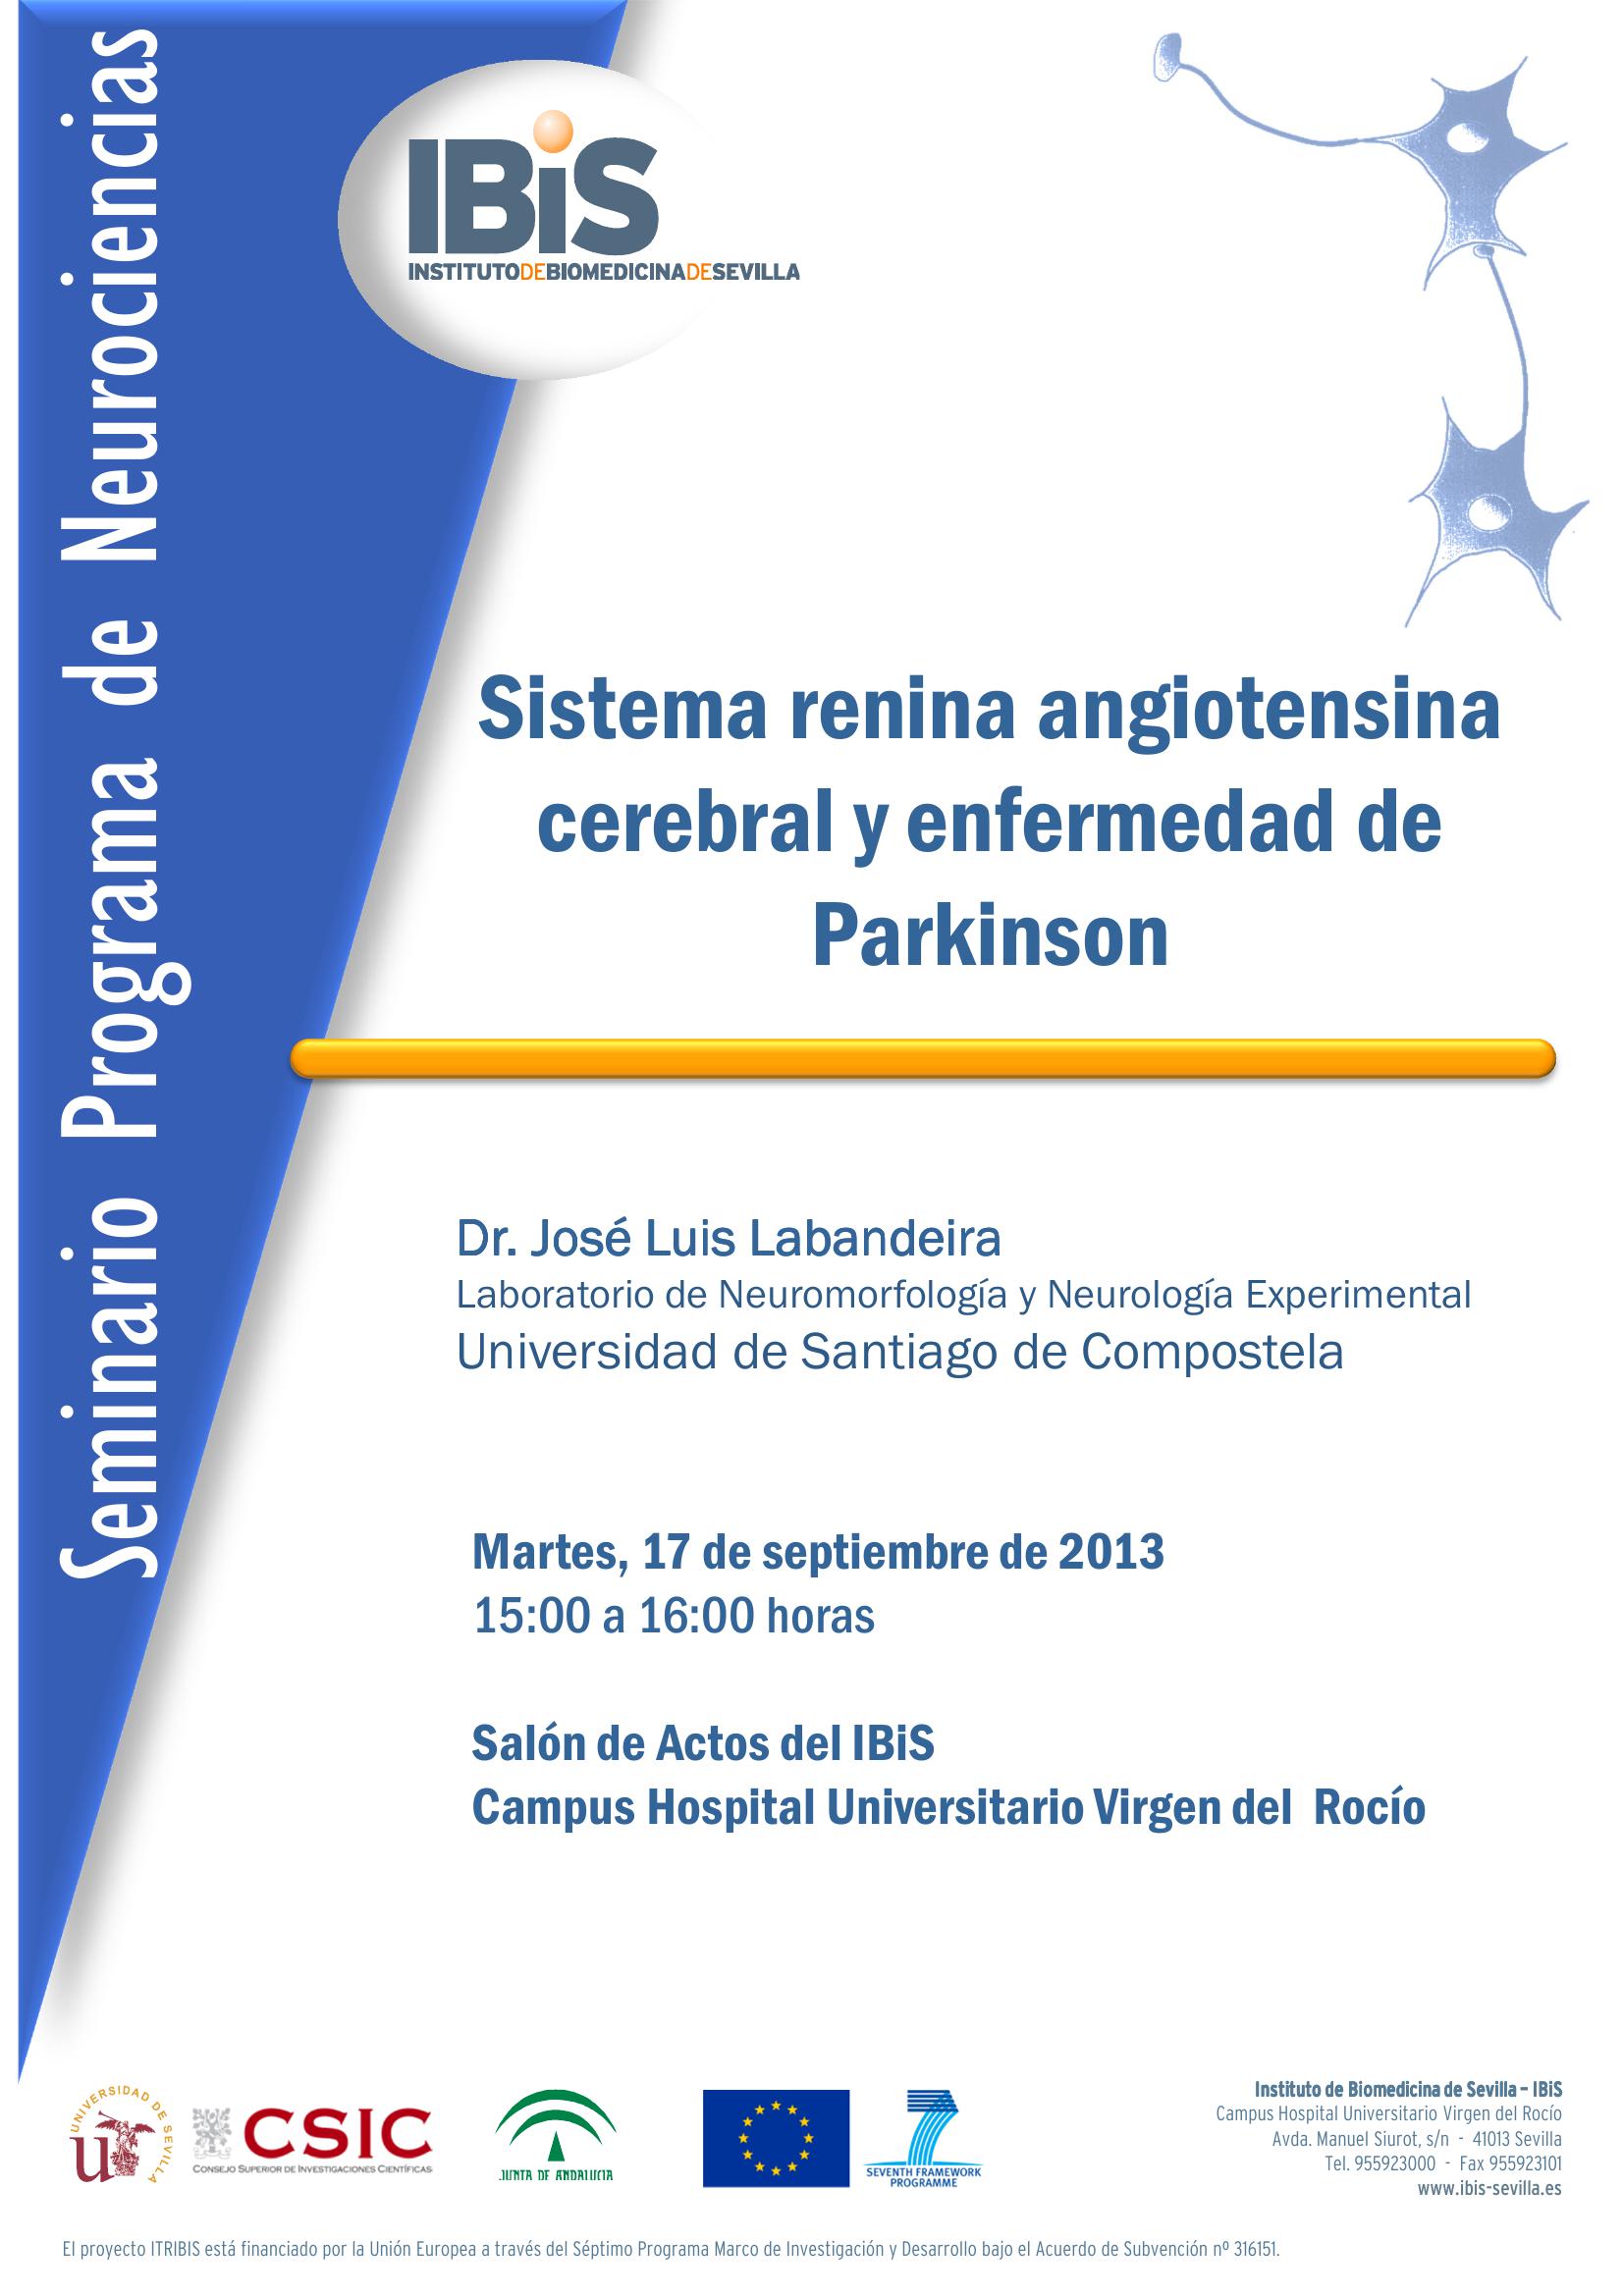 Poster: Sistema renina angiotensina cerebral y enfermedad de Parkinson